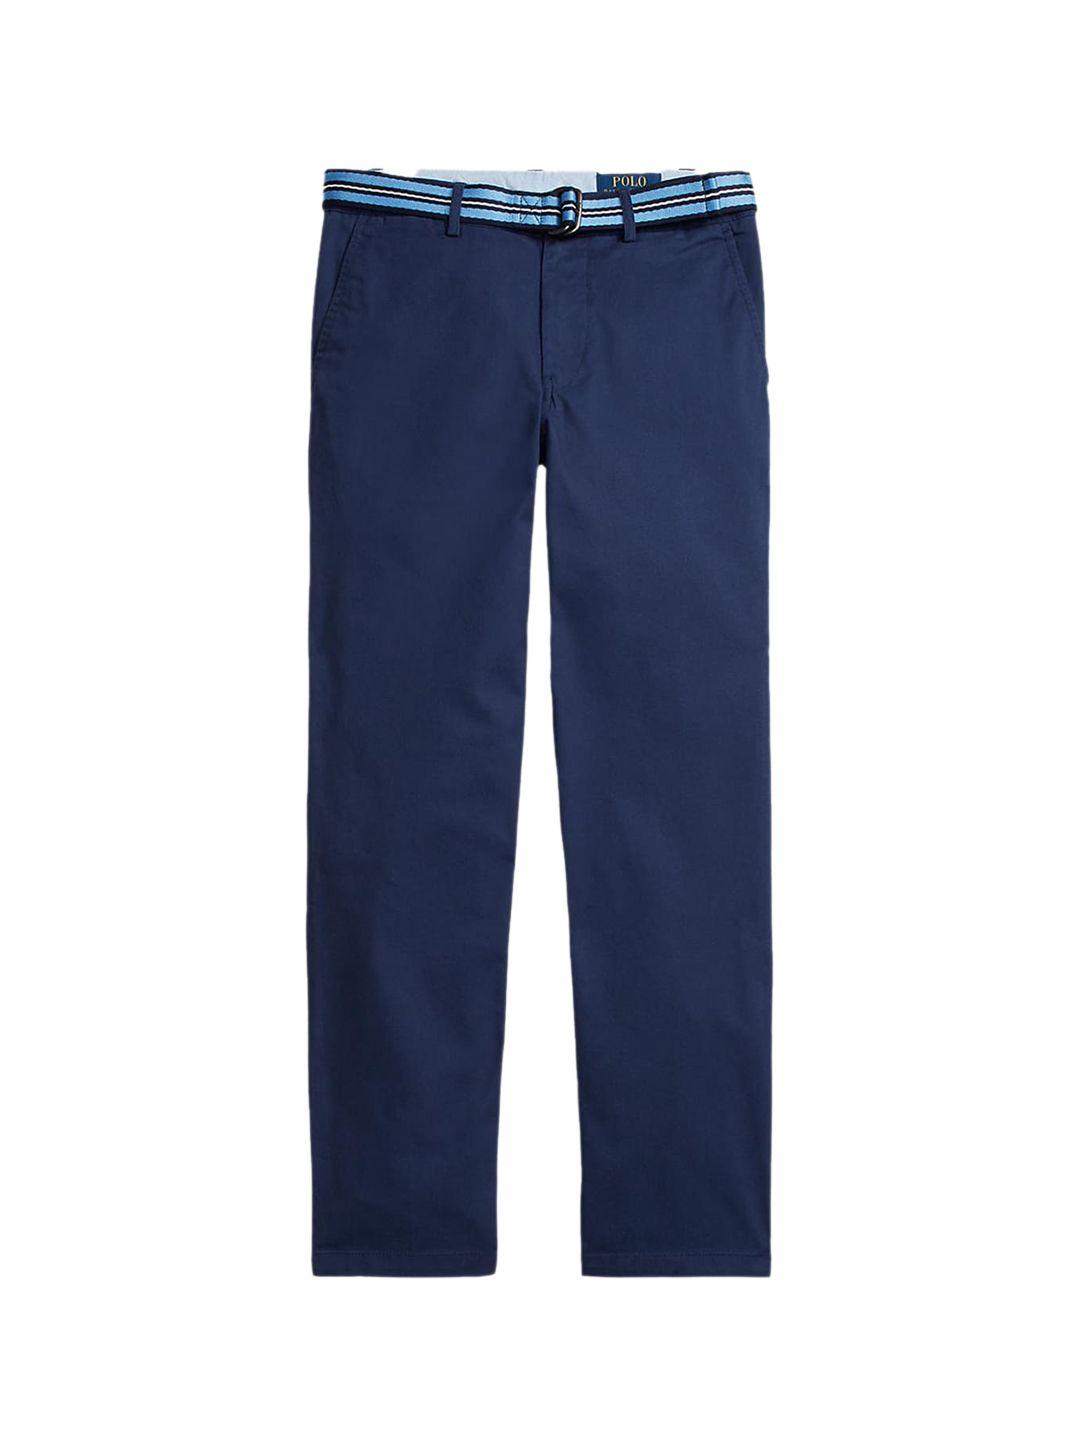 polo ralph lauren boys navy blue slim fit cotton trousers